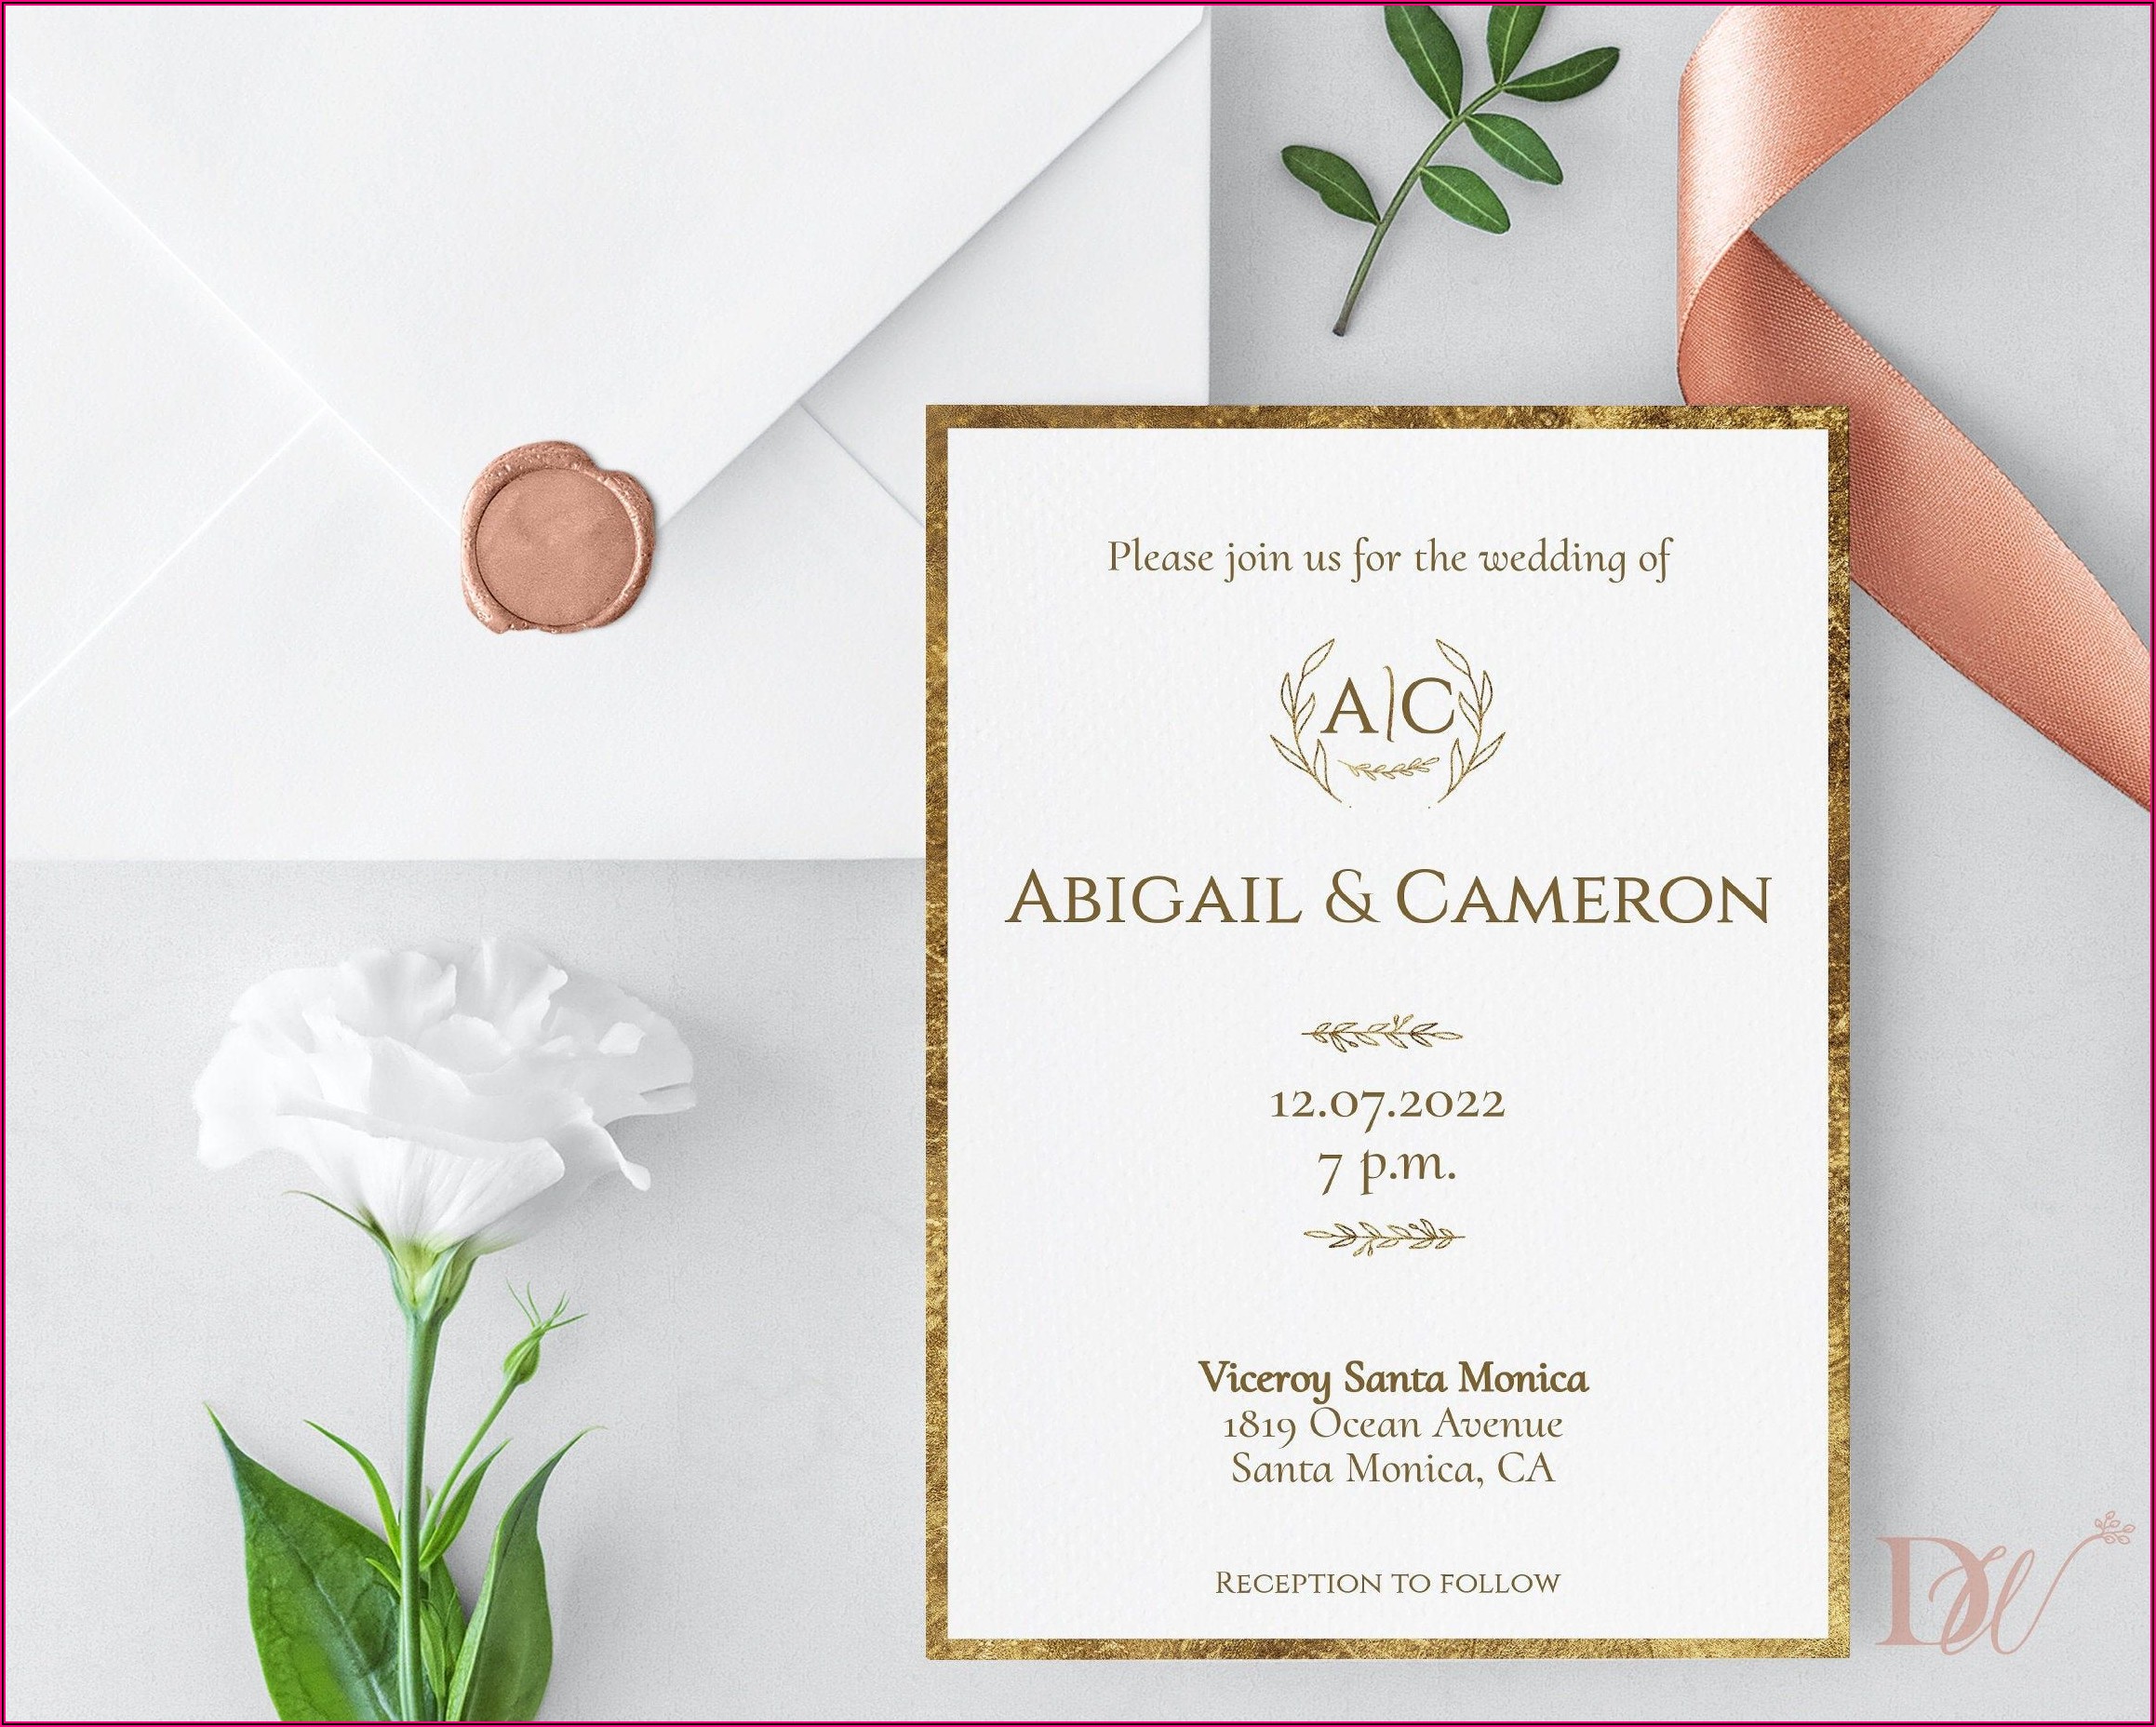 Simple And Elegant Wedding Invitations